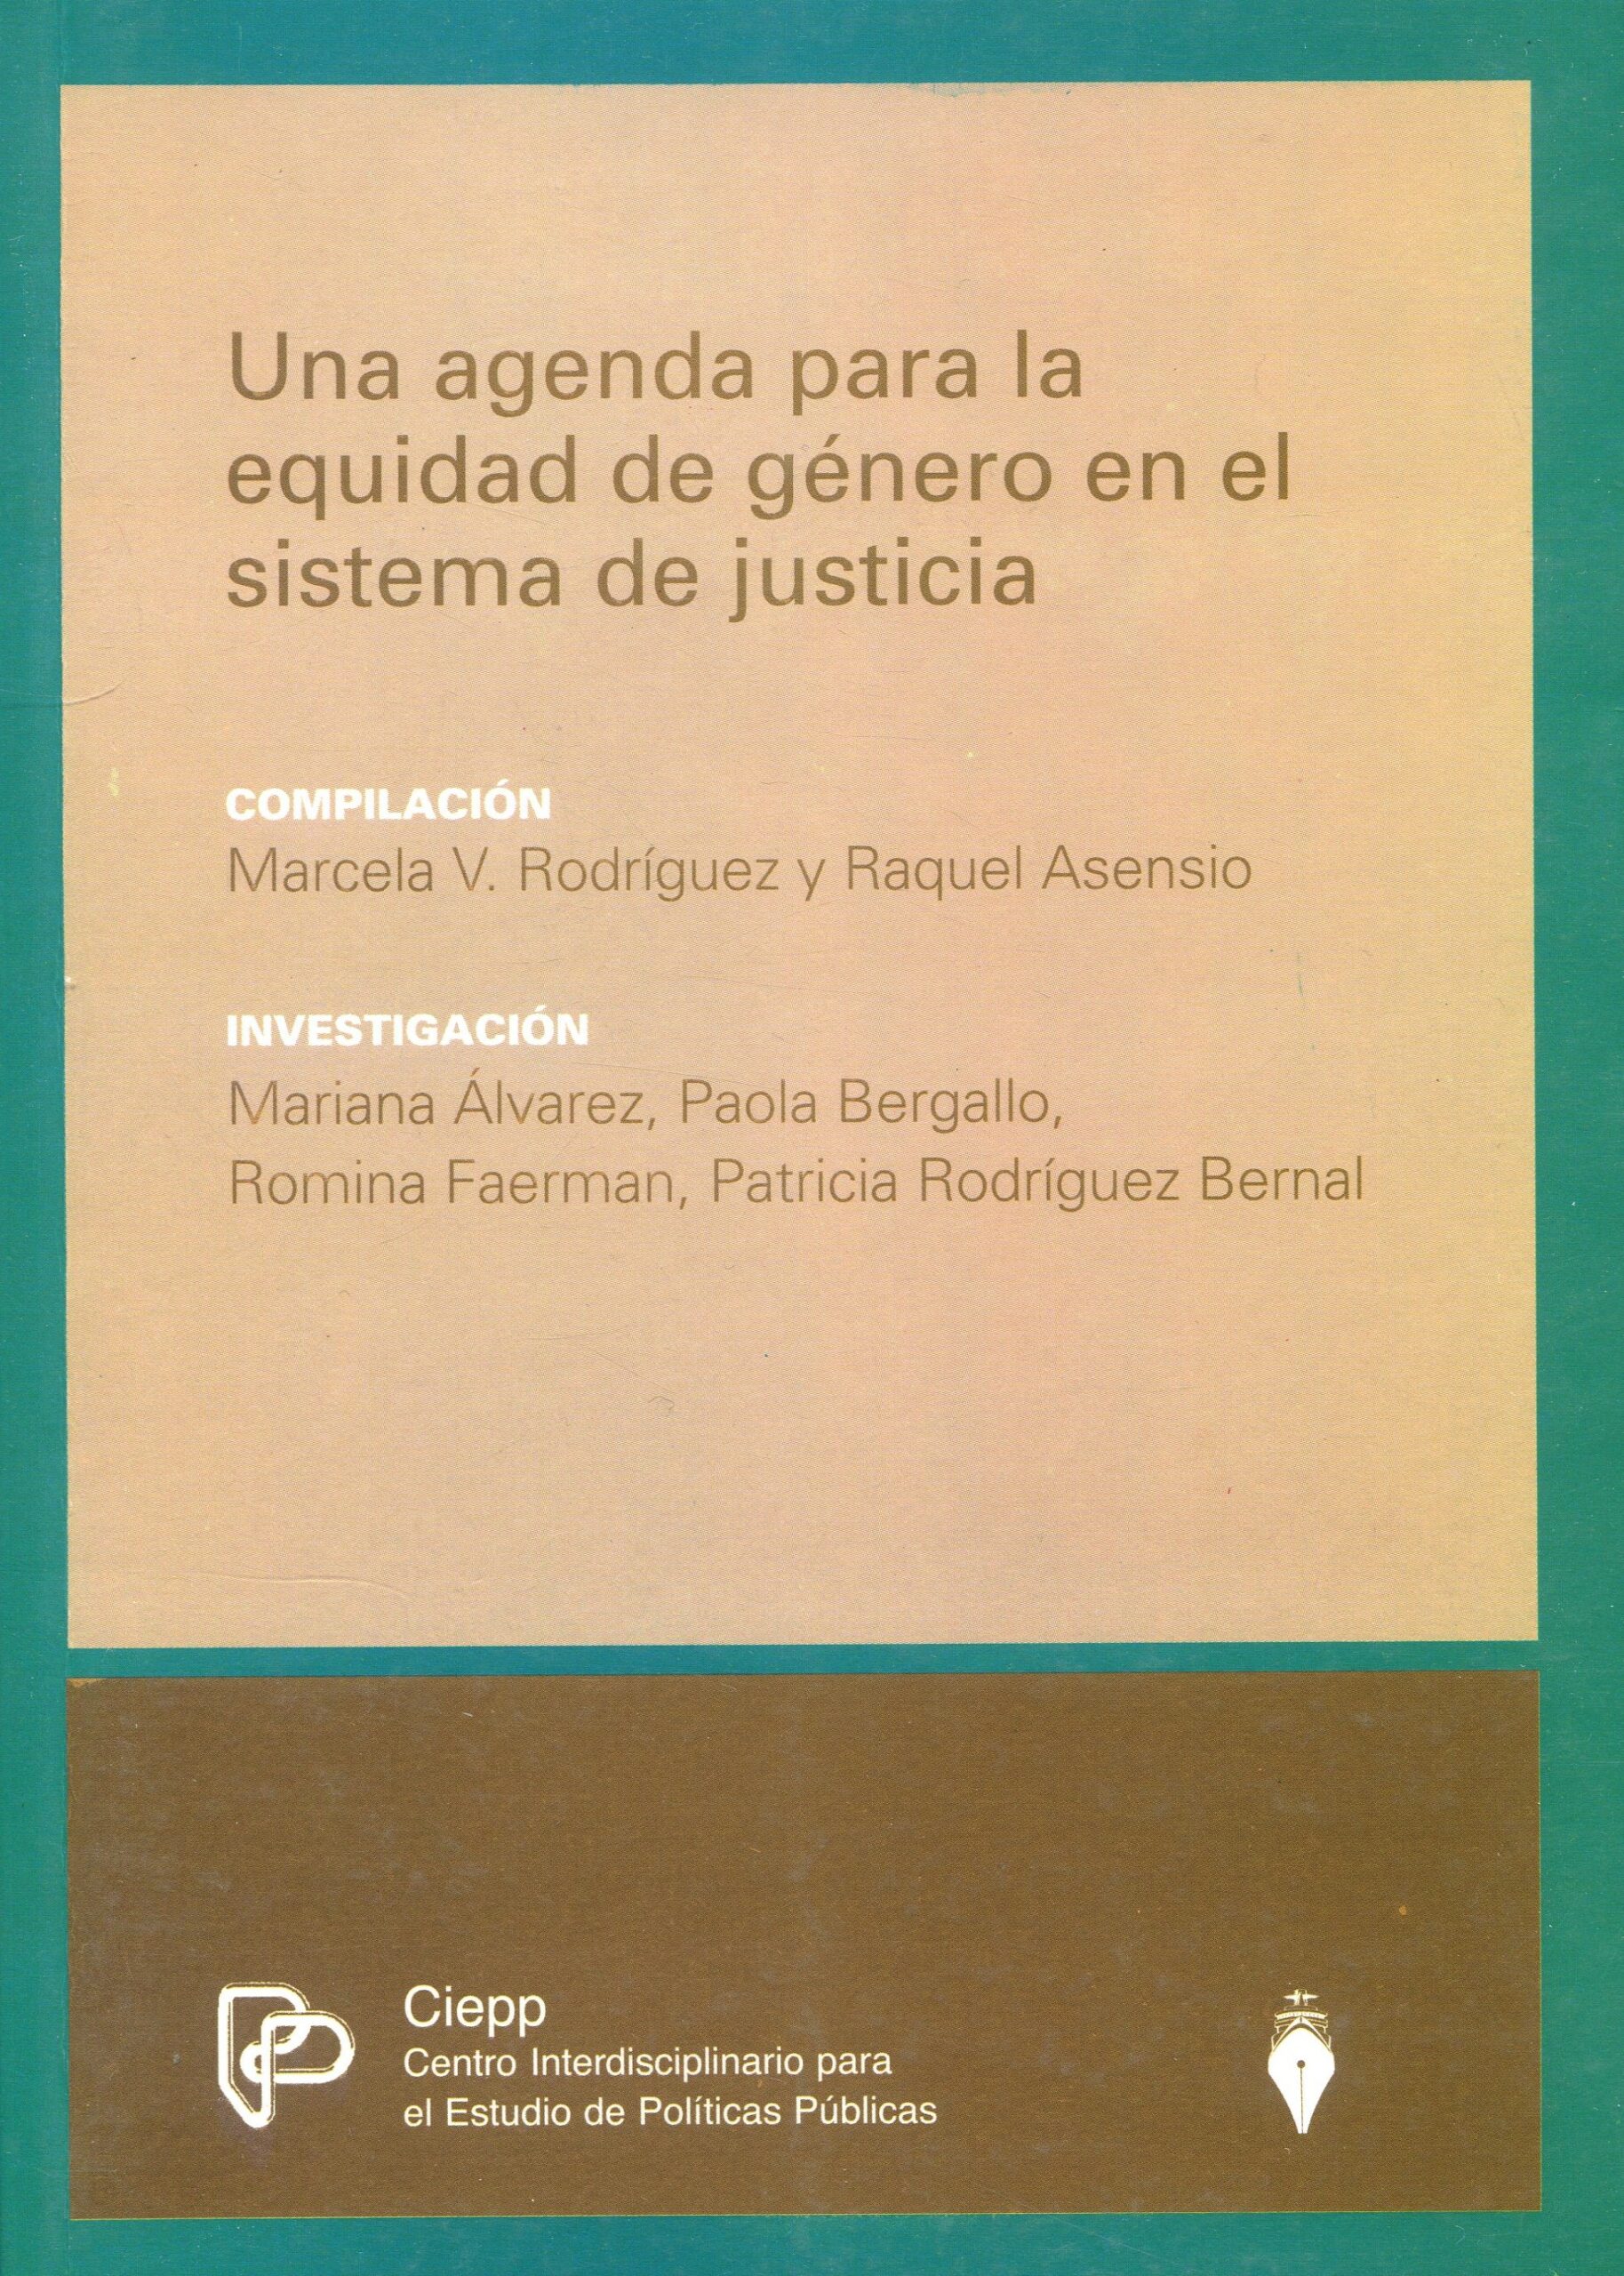 Agenda para equidad de género en sistema de justicia 9789871397204